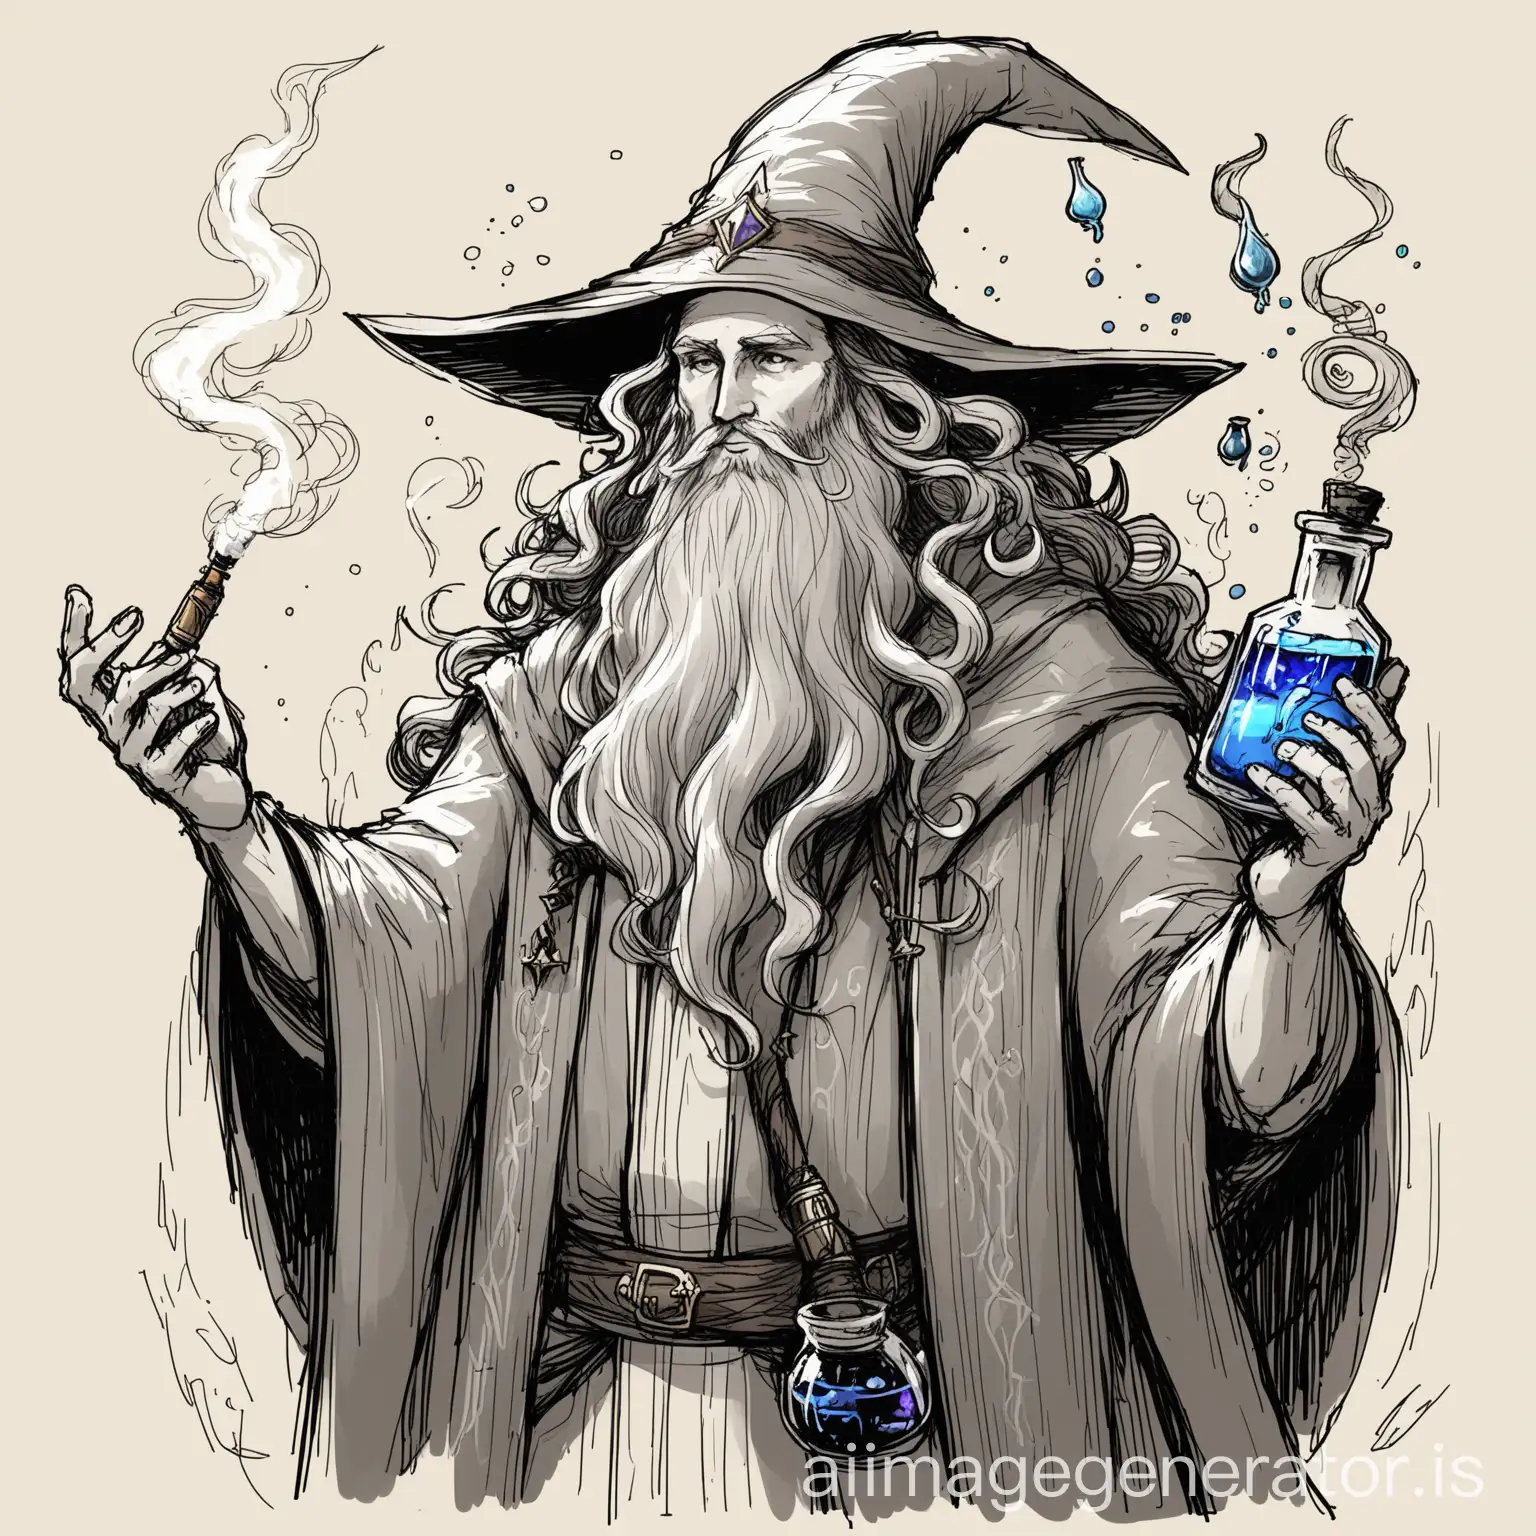 Skizze eines Fantasy Magiers mit langem Bart und kurzen lockigen Haaren. Er hat Zaubertränke um sich herum und eine vape in der Hand
